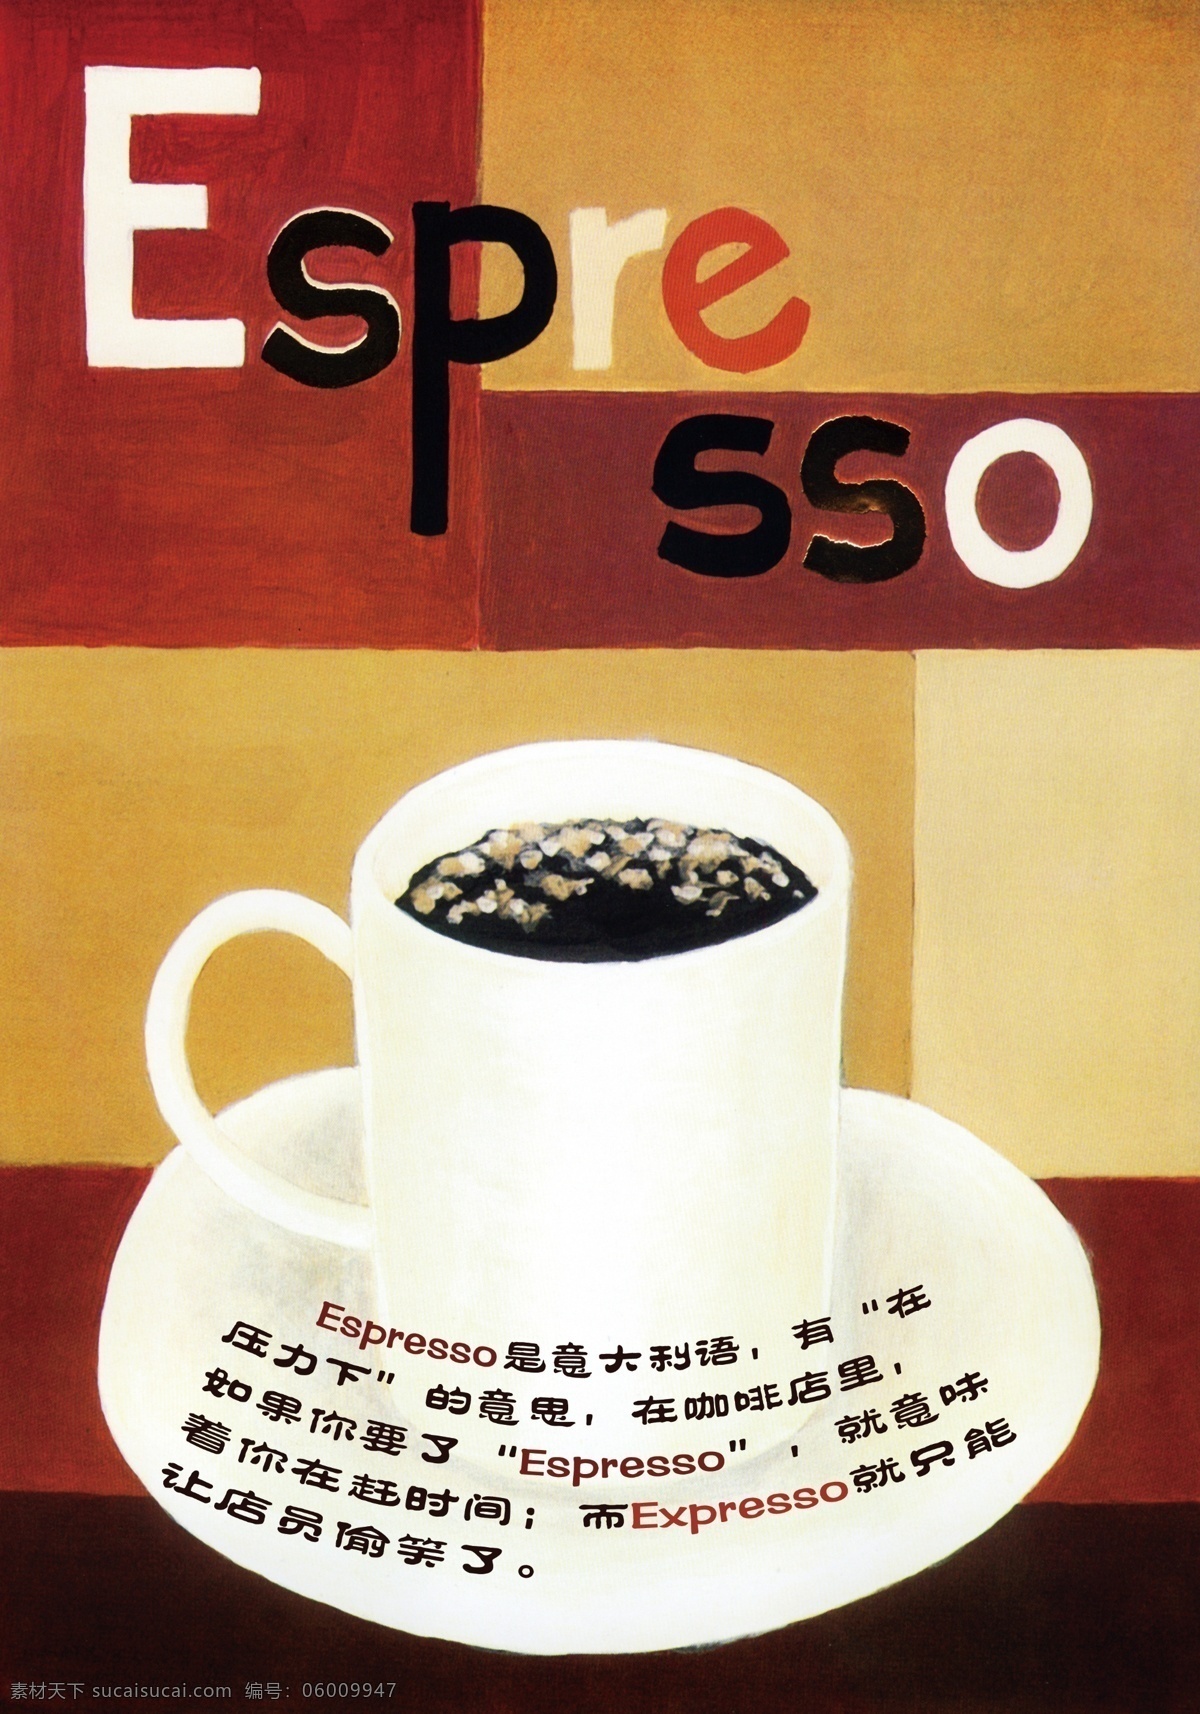 意式咖啡 espresso 意式咖啡解释 白色